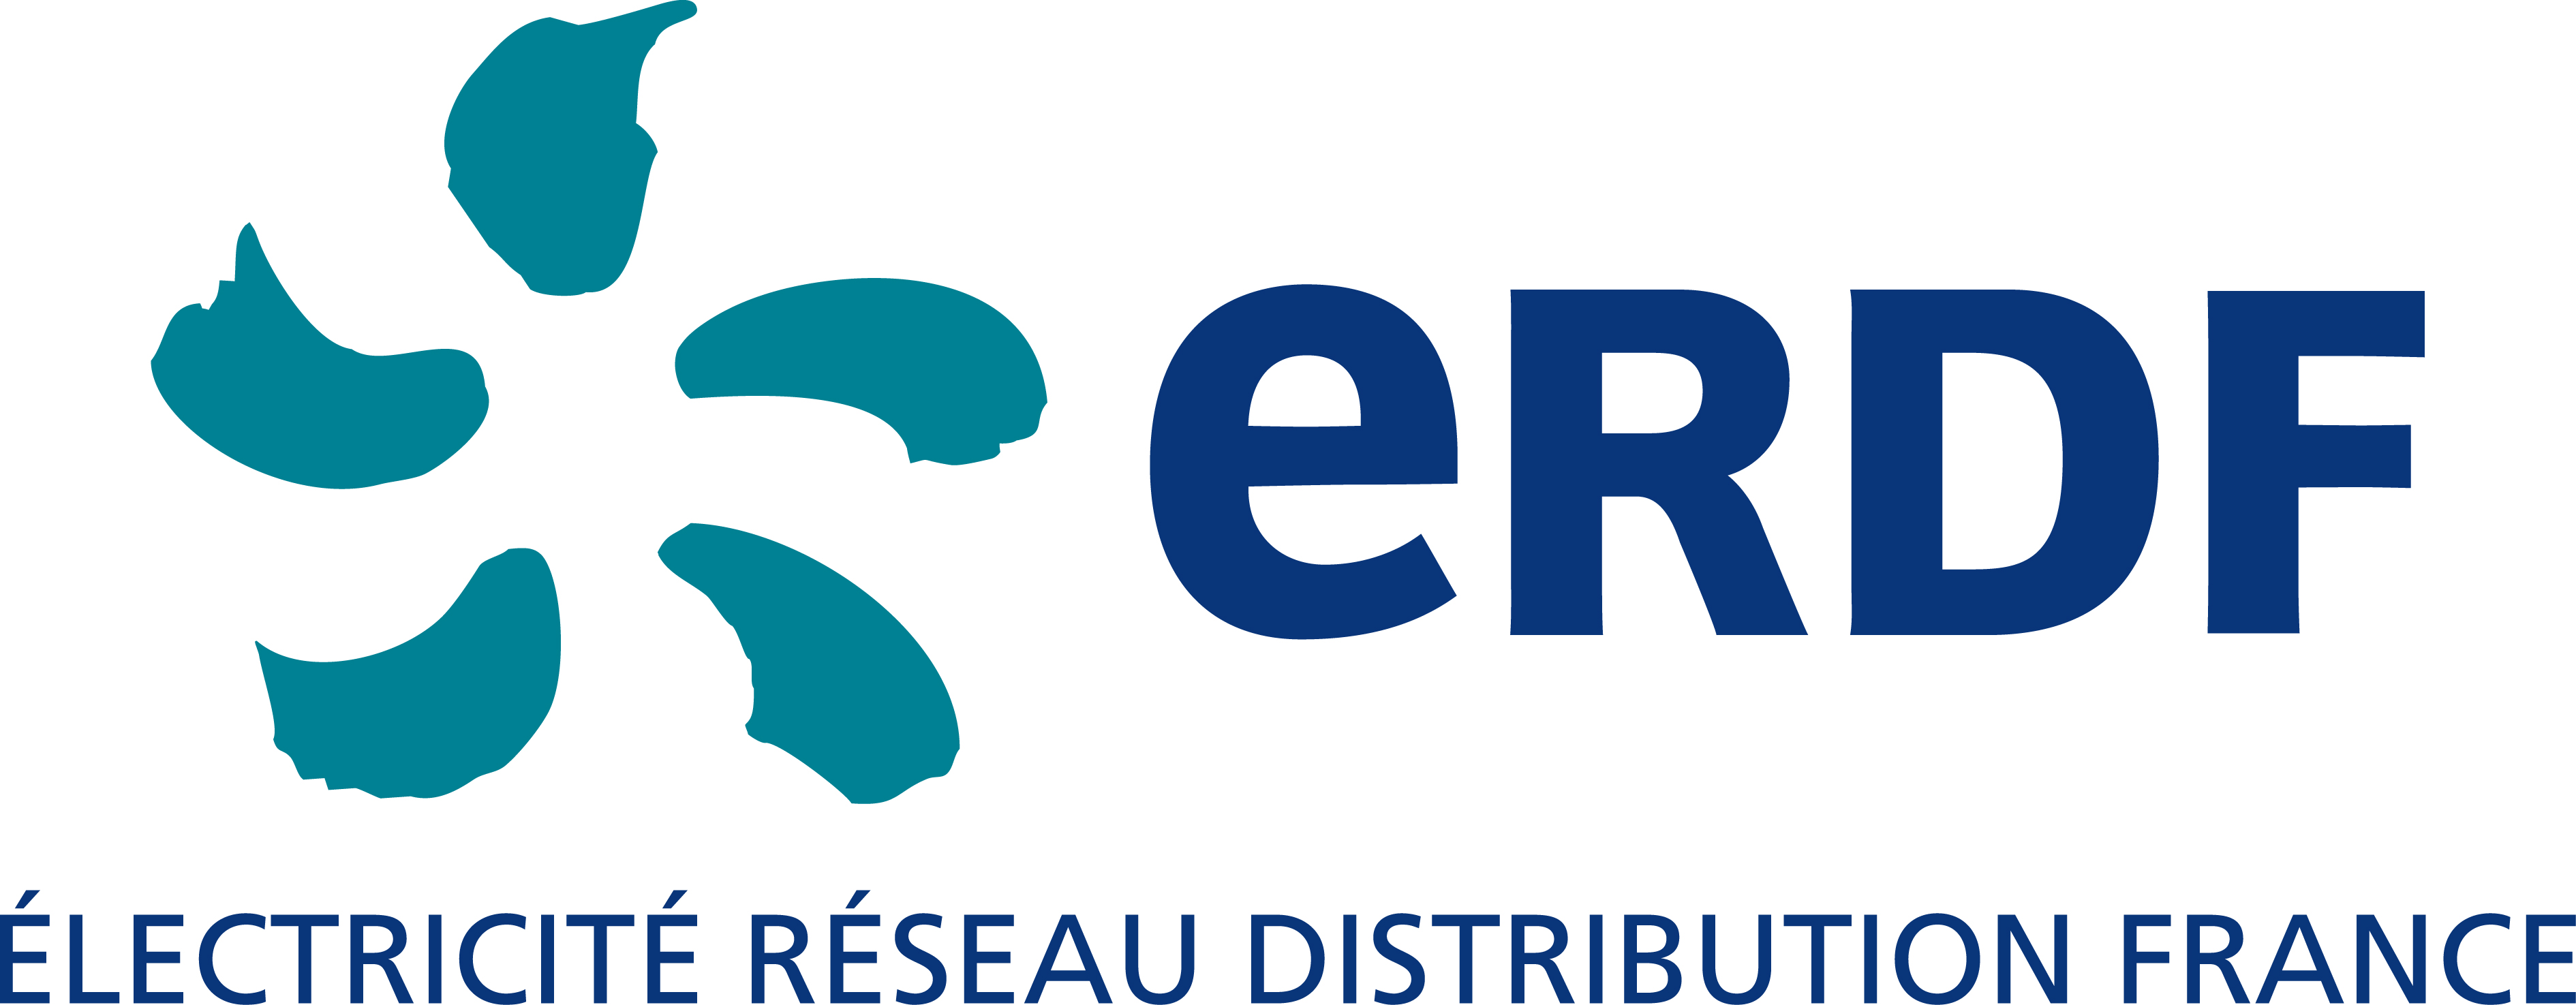 erdf-logo